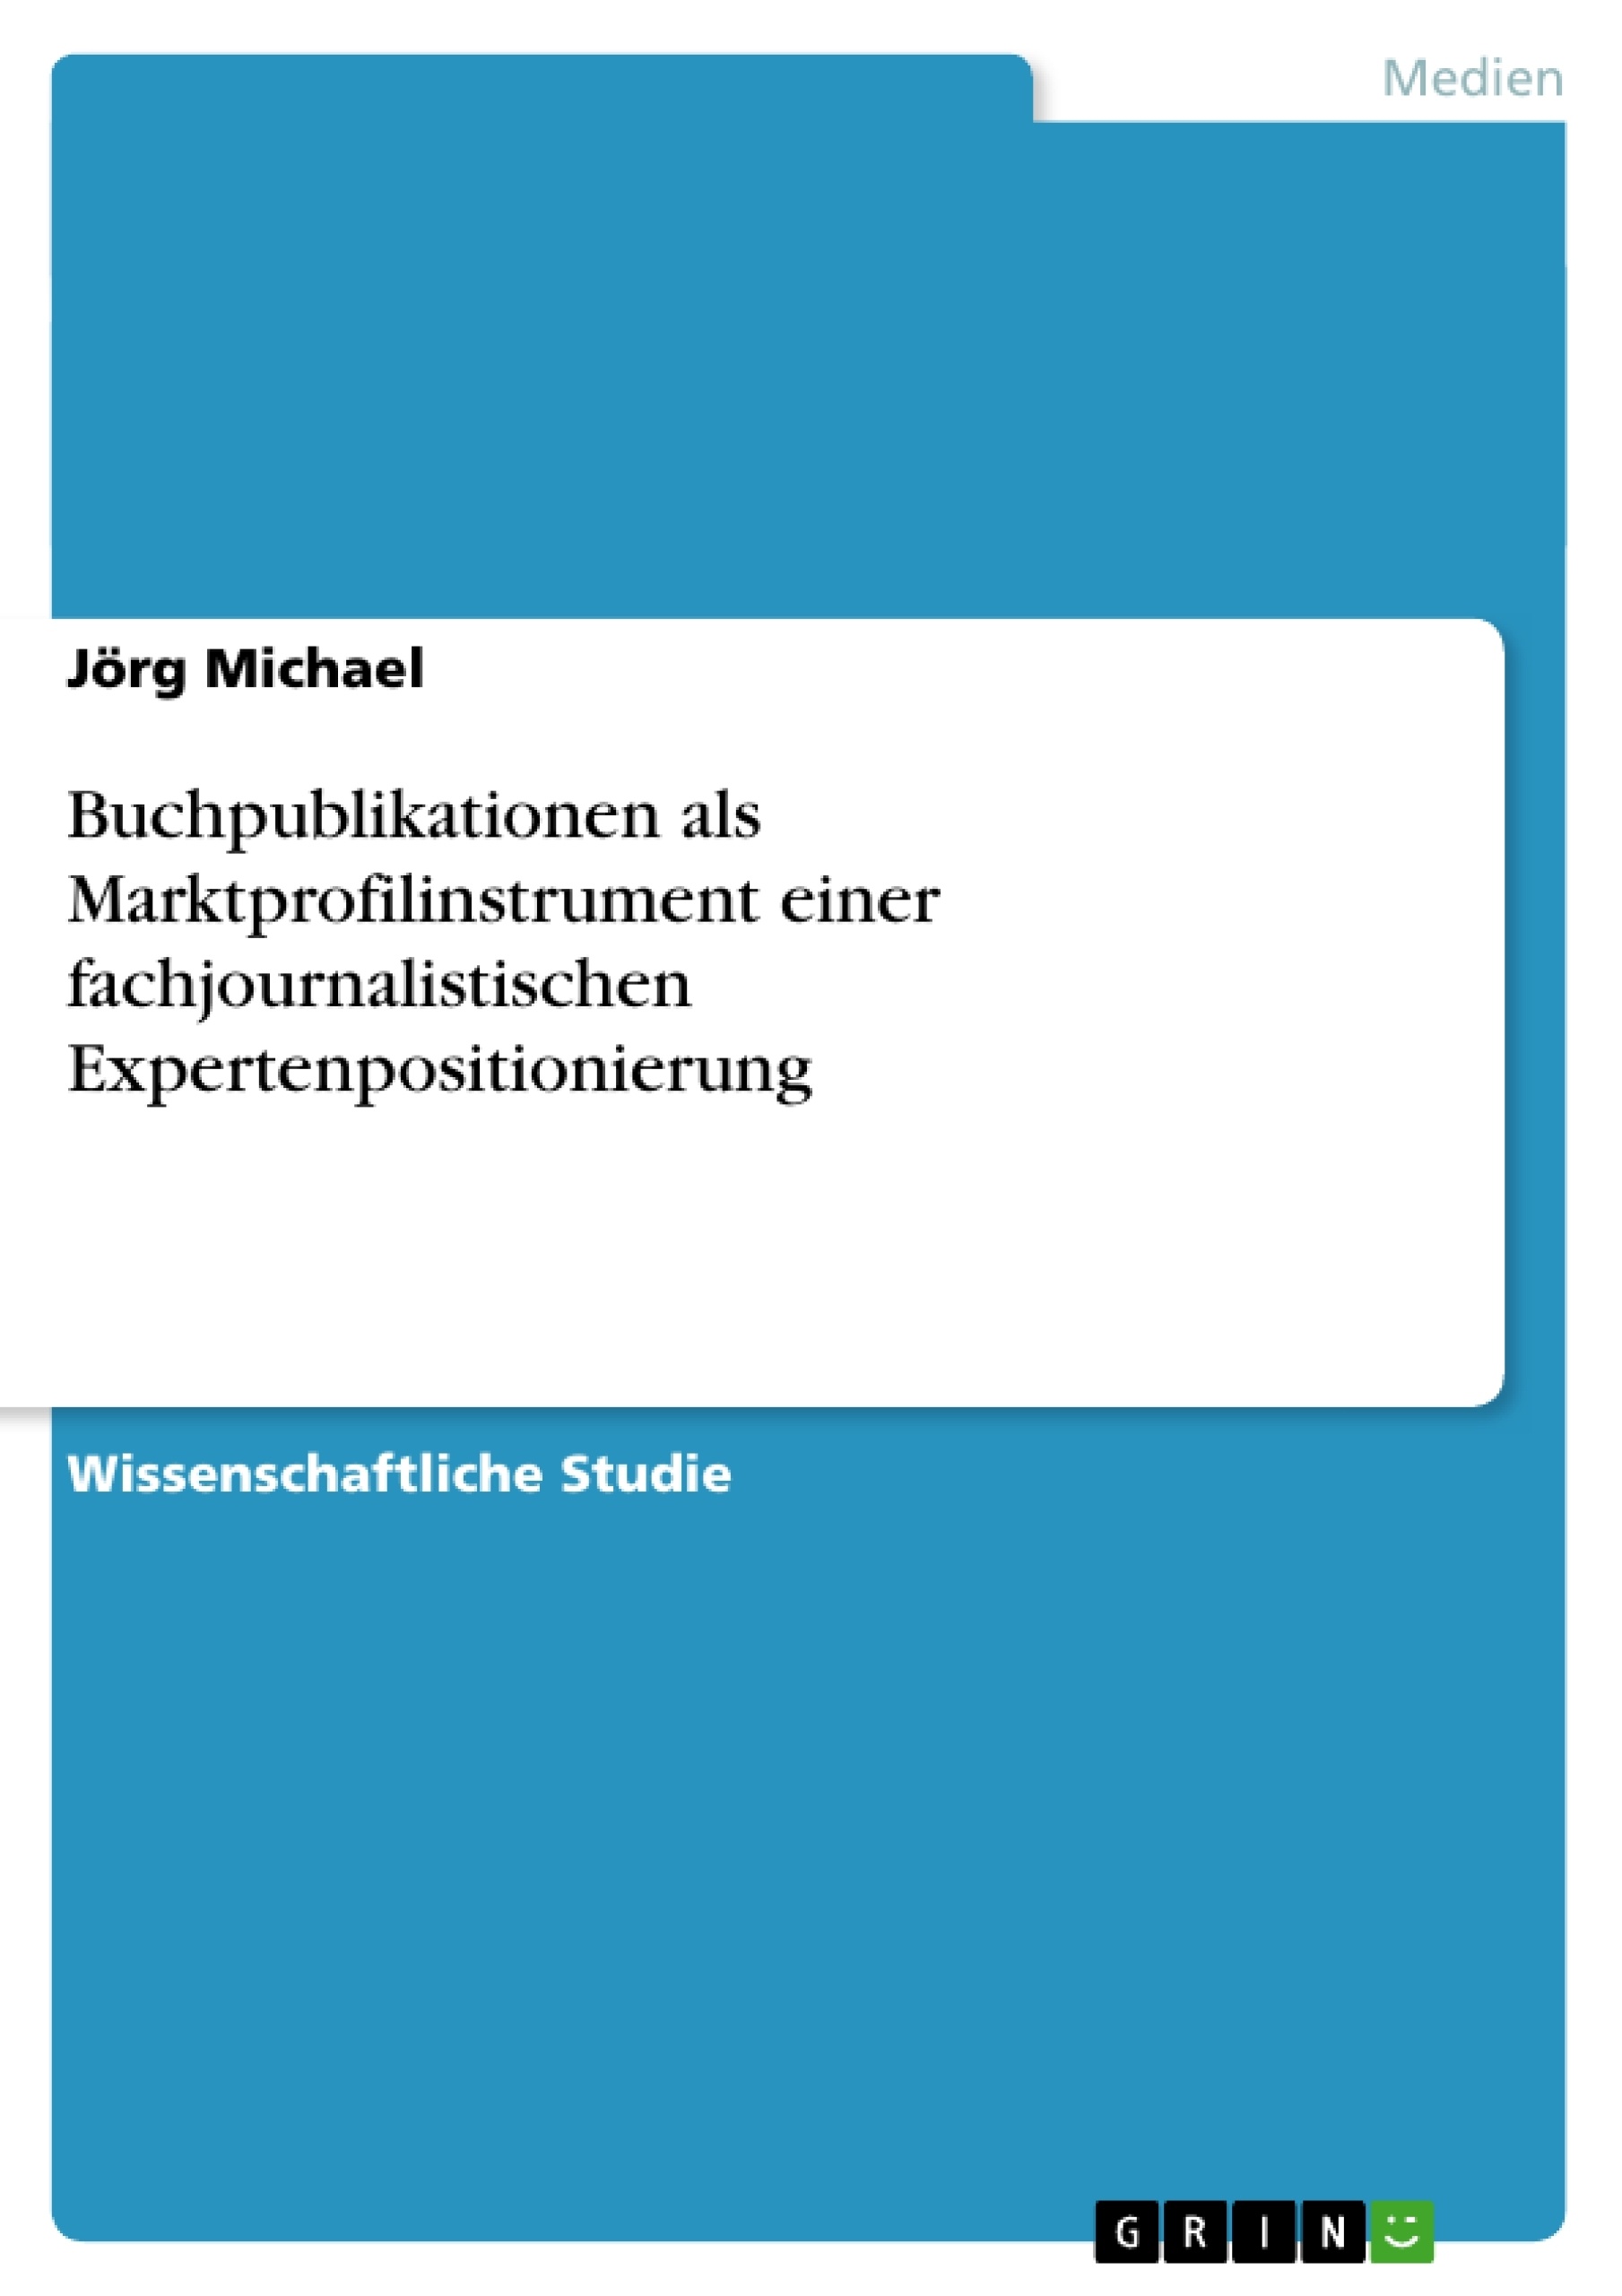 Titre: Buchpublikationen als Marktprofilinstrument einer fachjournalistischen Expertenpositionierung